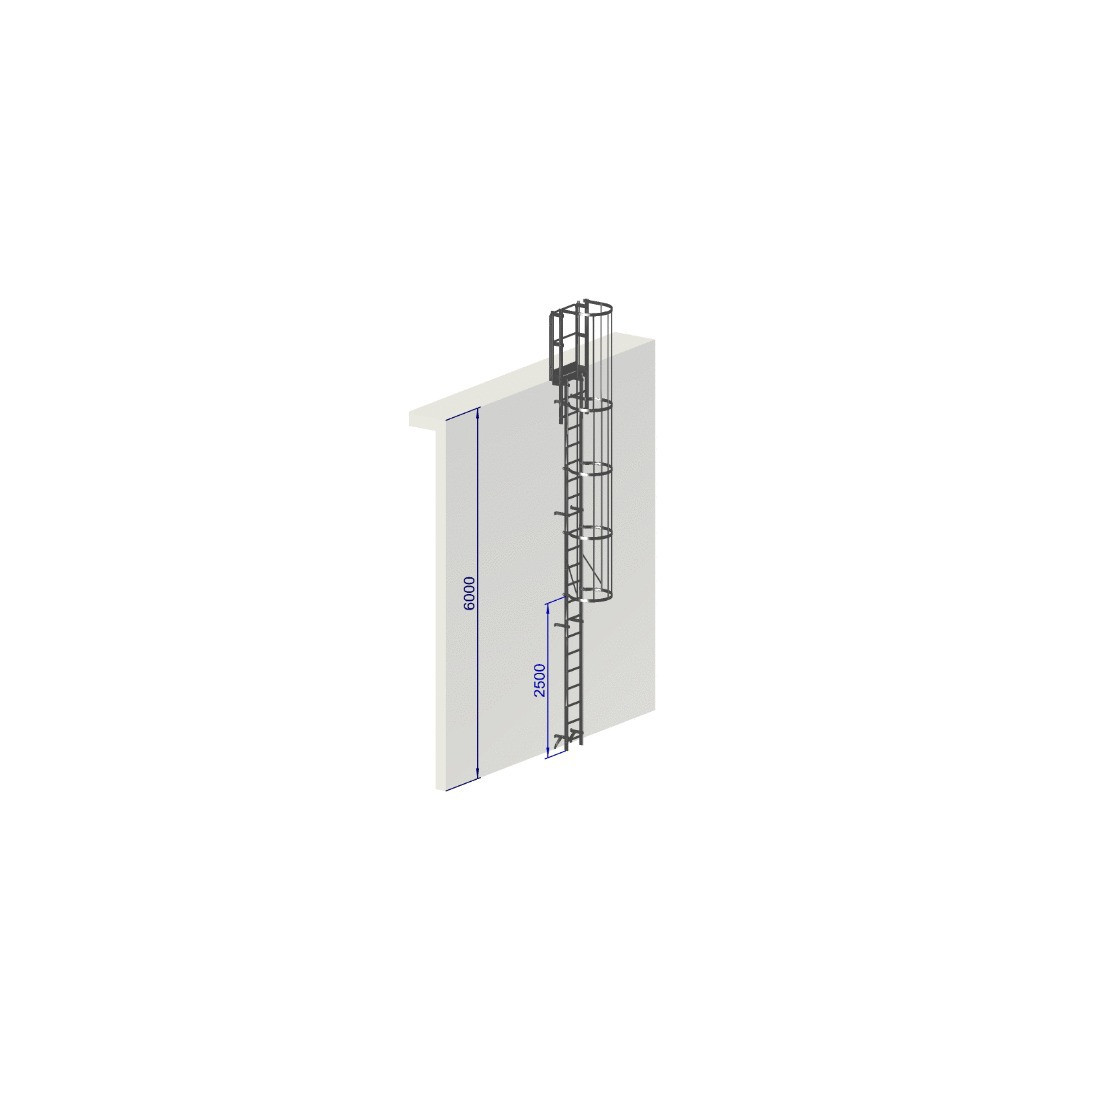 Escalera de protección dorsal - Crinolina altura 6000 mm EN ISO 14122-4